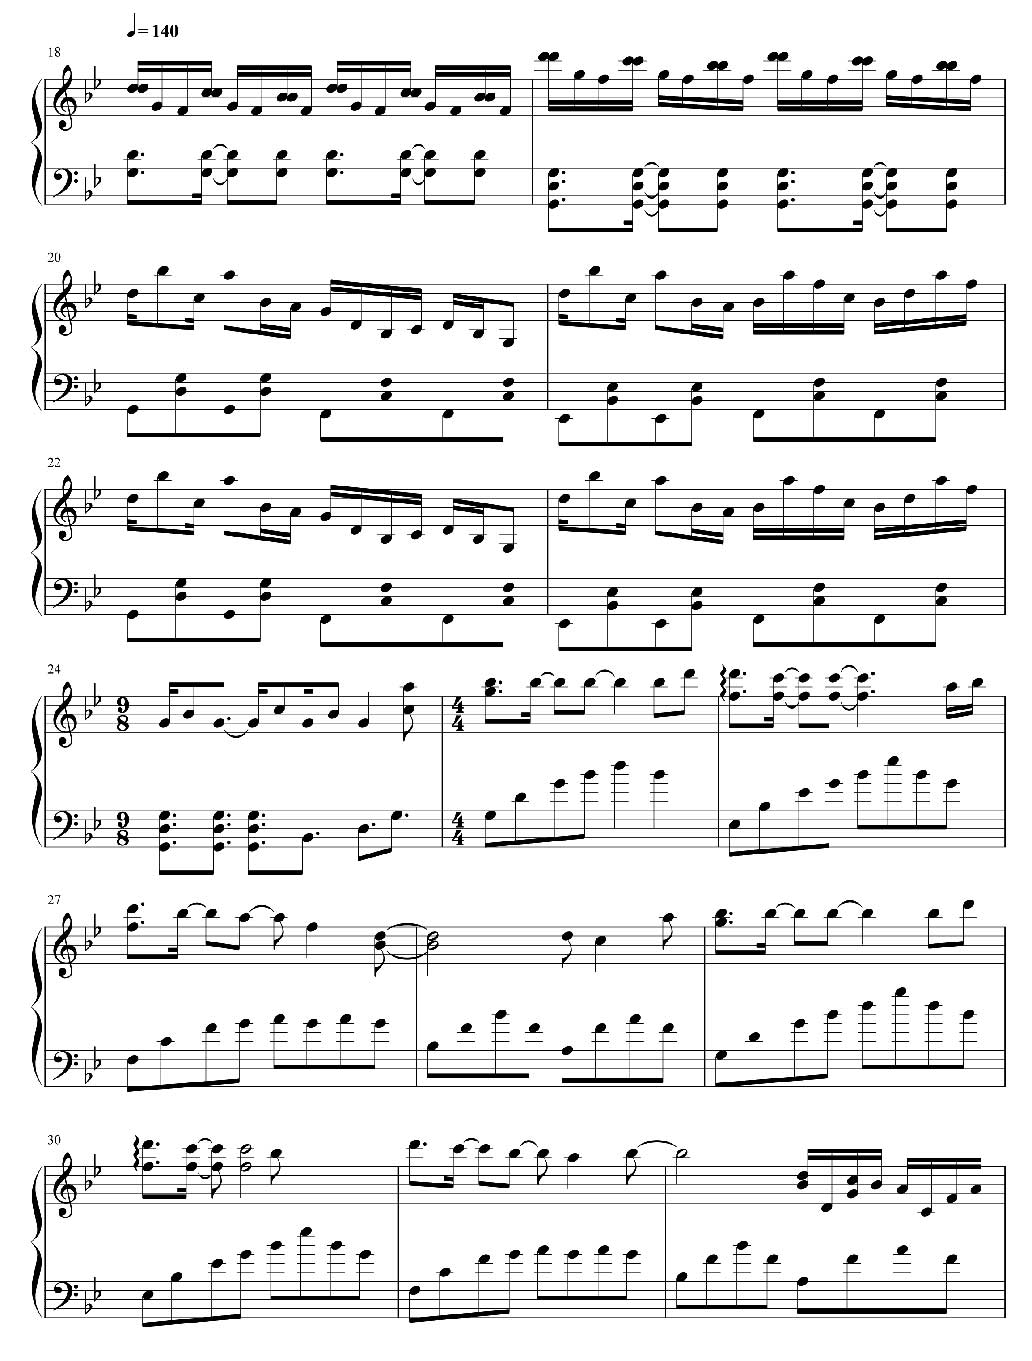 Unravel-简化自A叔版双手简谱预览8-钢琴谱文件（五线谱、双手简谱、数字谱、Midi、PDF）免费下载